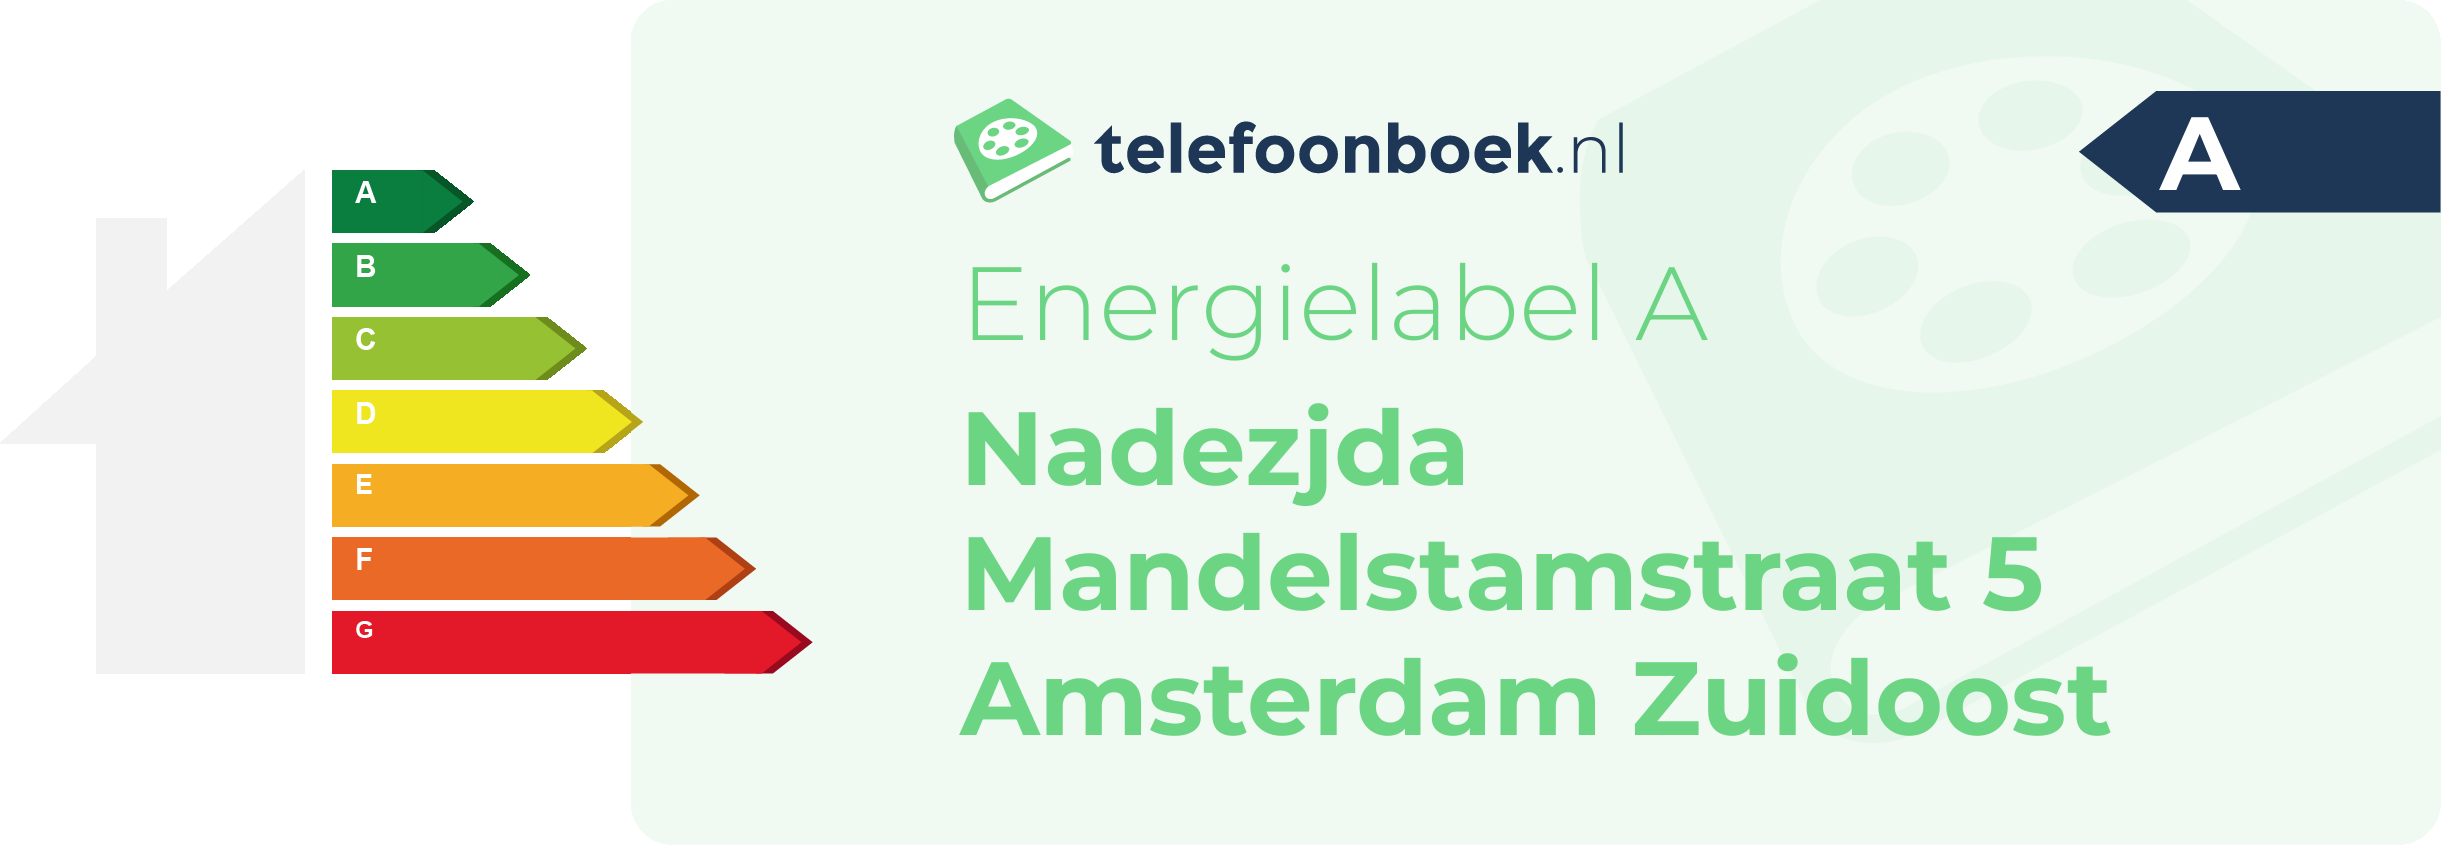 Energielabel Nadezjda Mandelstamstraat 5 Amsterdam Zuidoost